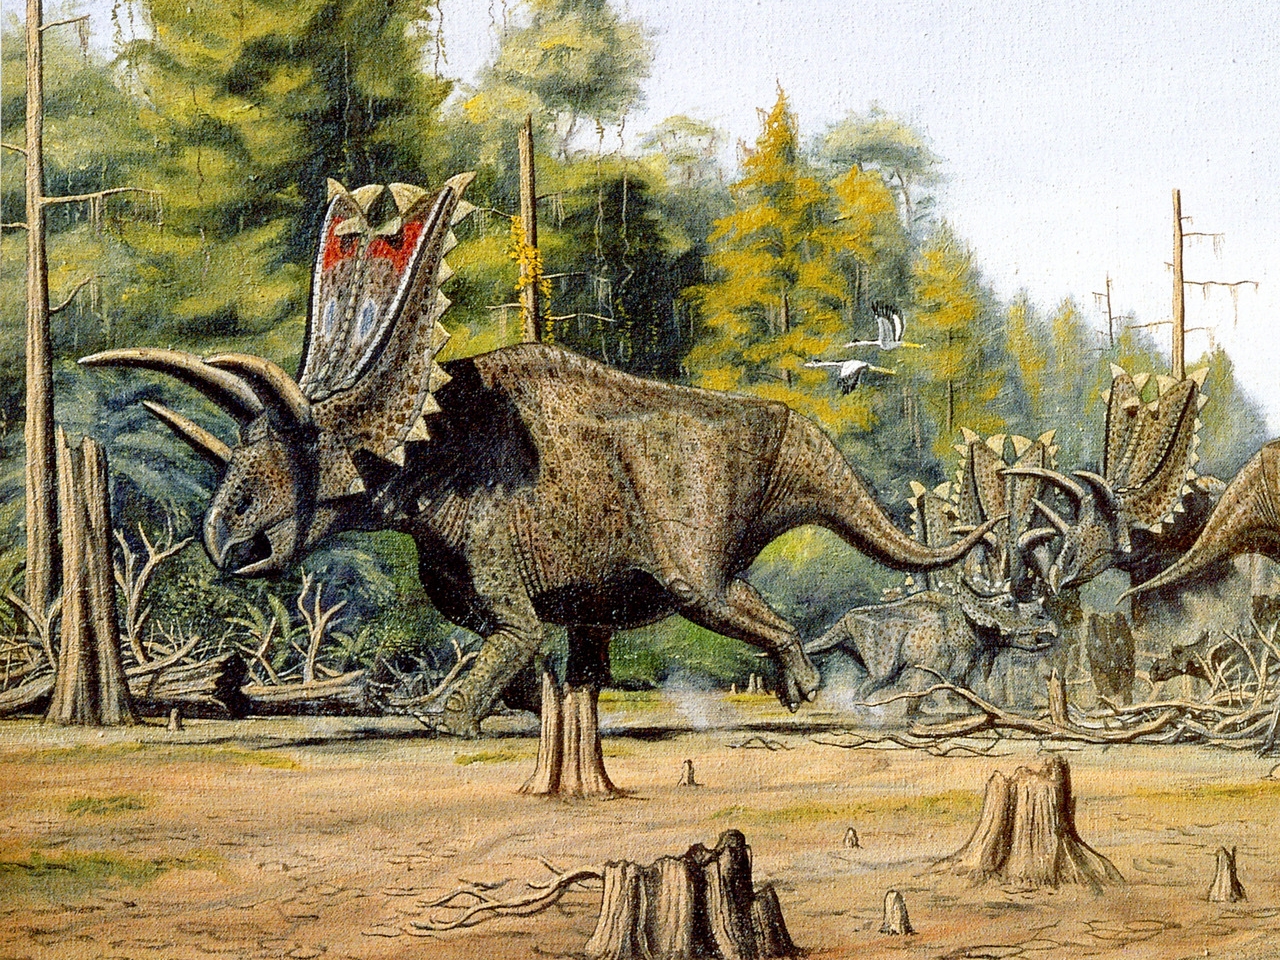 Скачать обои бесплатно Животные, Динозавр картинка на рабочий стол ПК